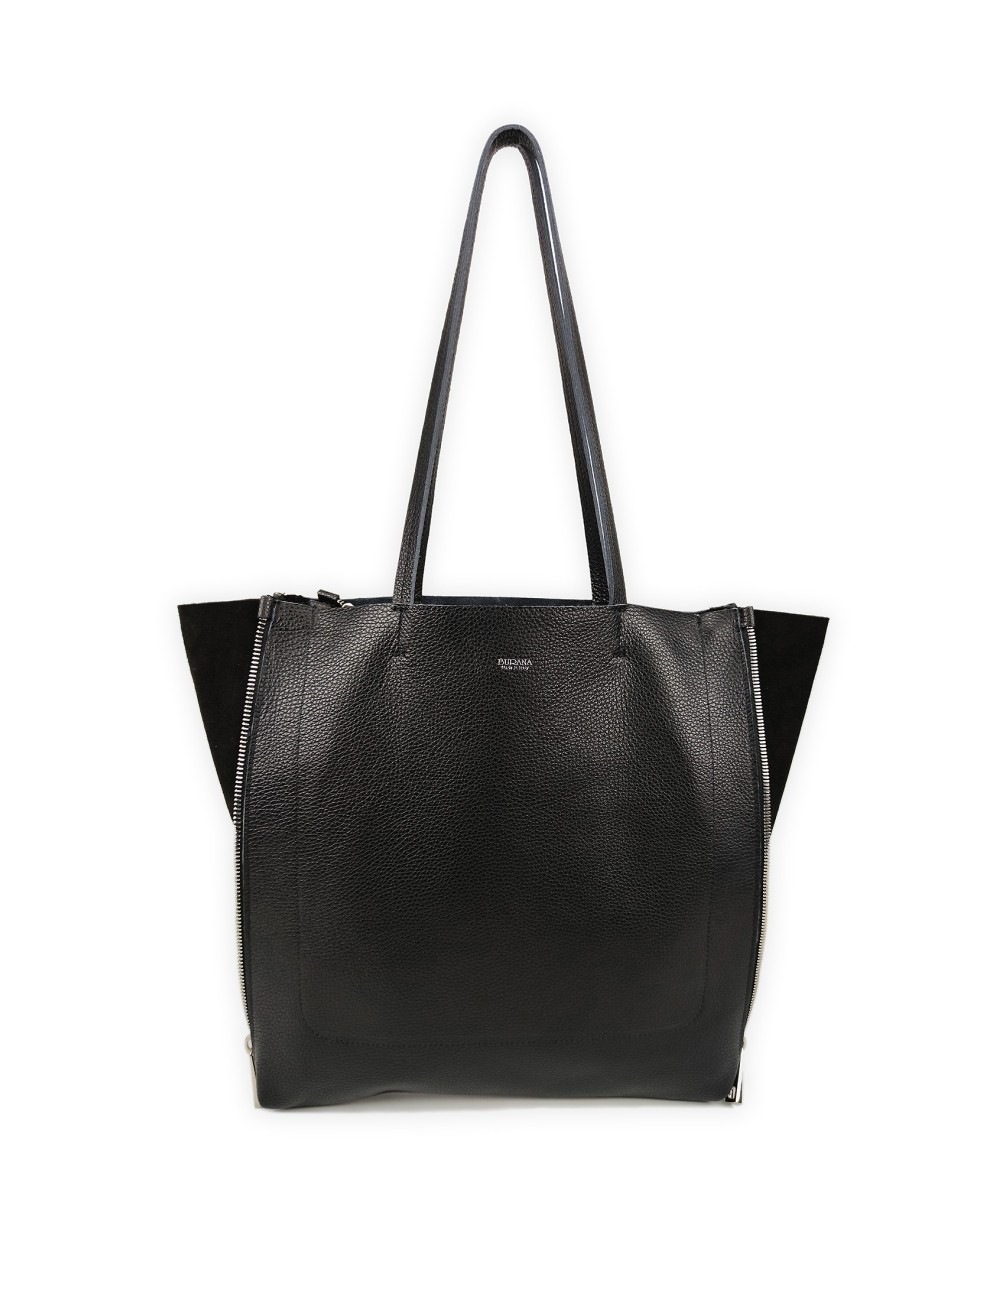 Zeus Shopping Shoulder Bag in Leather - Black